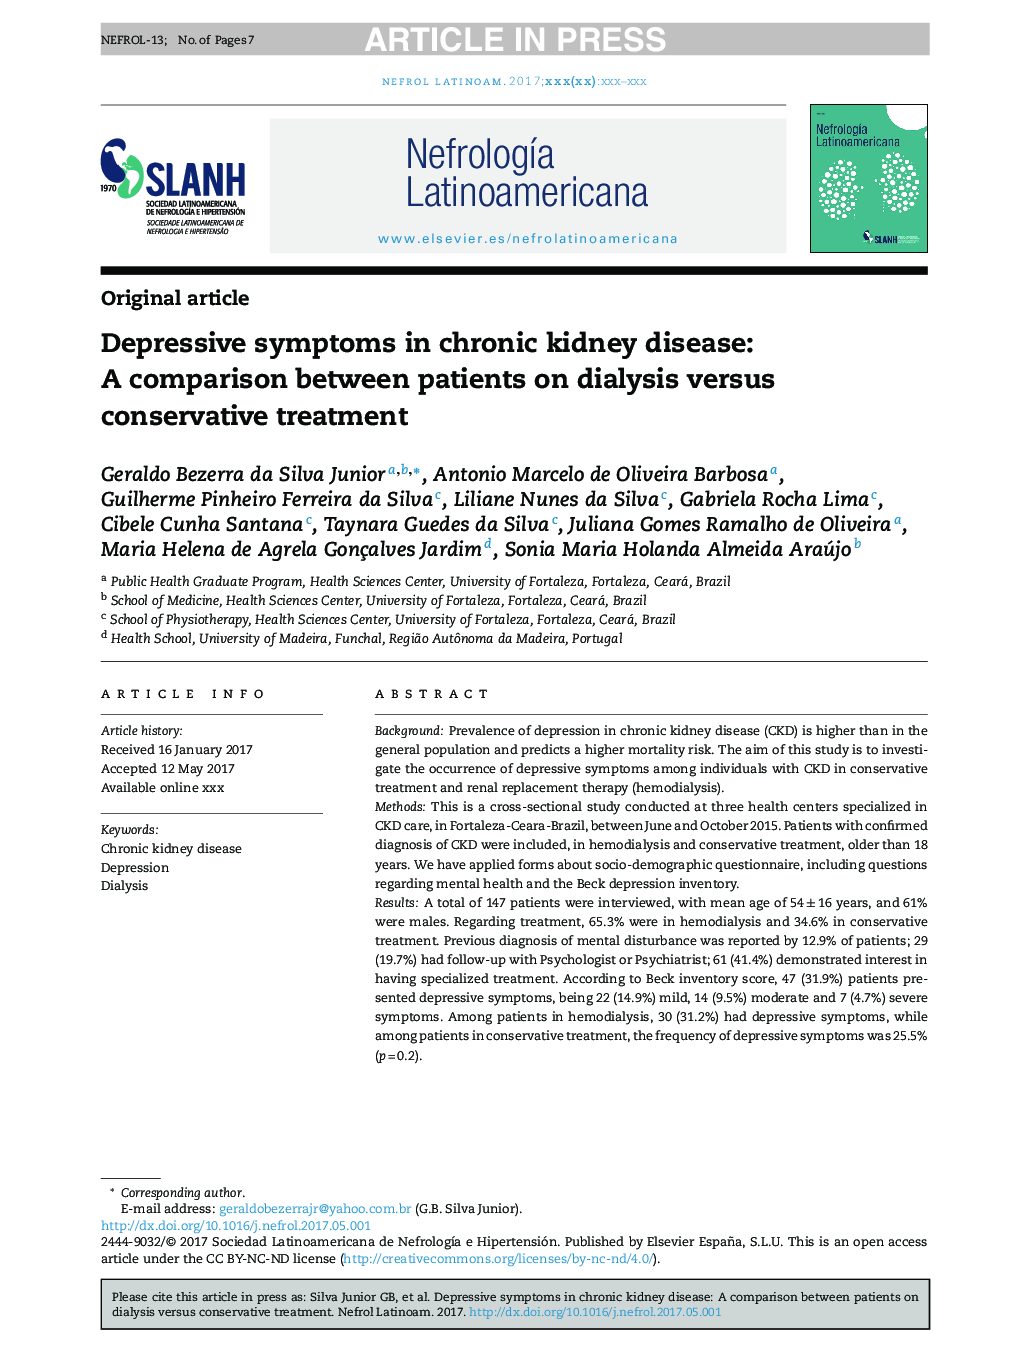 علائم افسردگی در بیماری مزمن کلیه: مقایسه بین بیماران دیالیز و درمان محافظه کارانه 